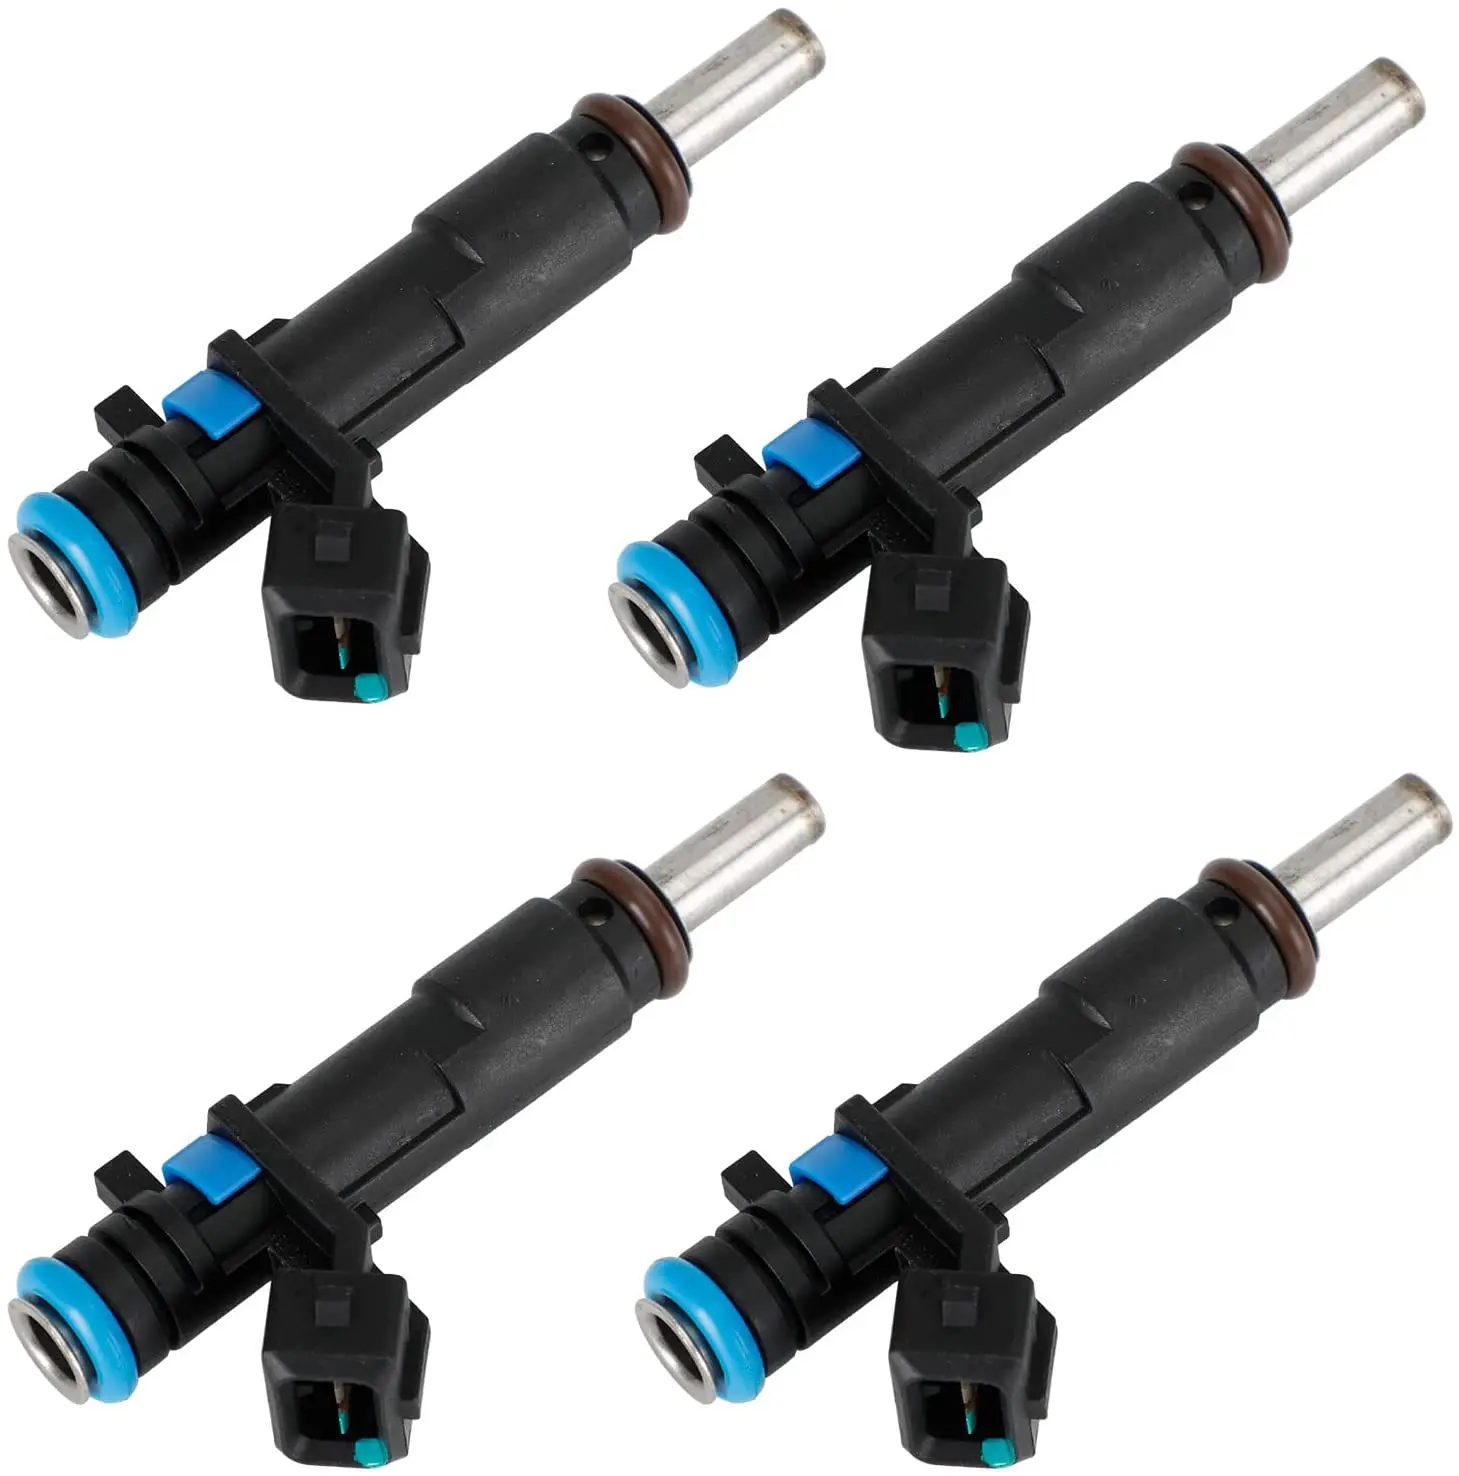 

4 Pcs Fuel Injector Nozzle 55570284 For Chevrolet Cruze Sonic 1.8L L4 FJ1153 217-3433 2173433